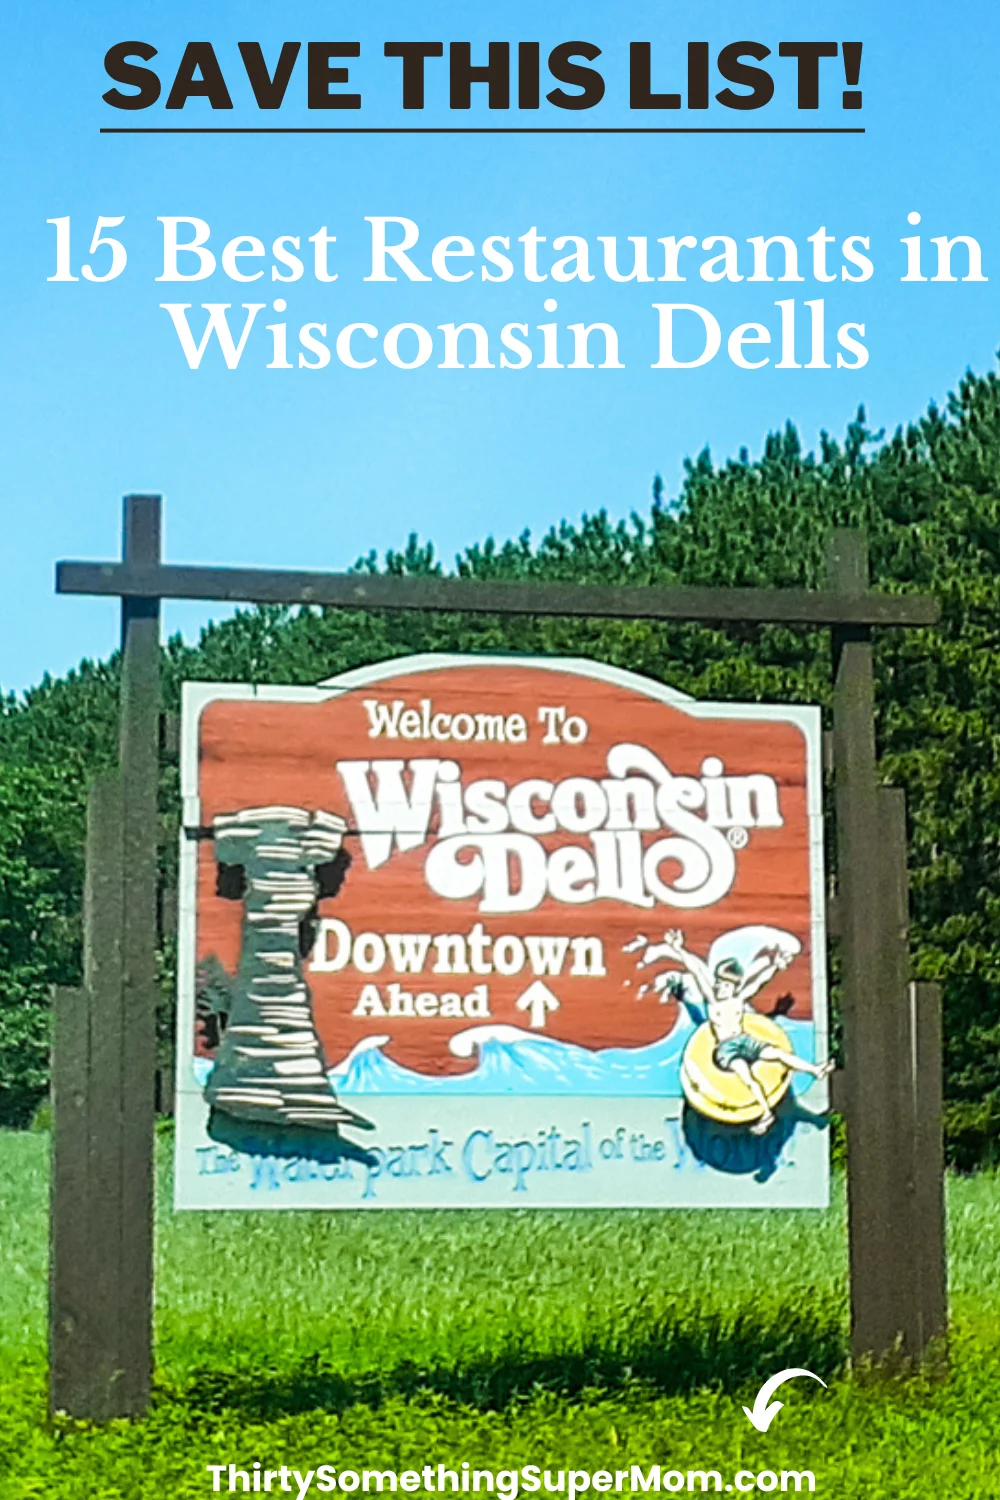 The 15 Best Restaurants in Wisconsin Dells